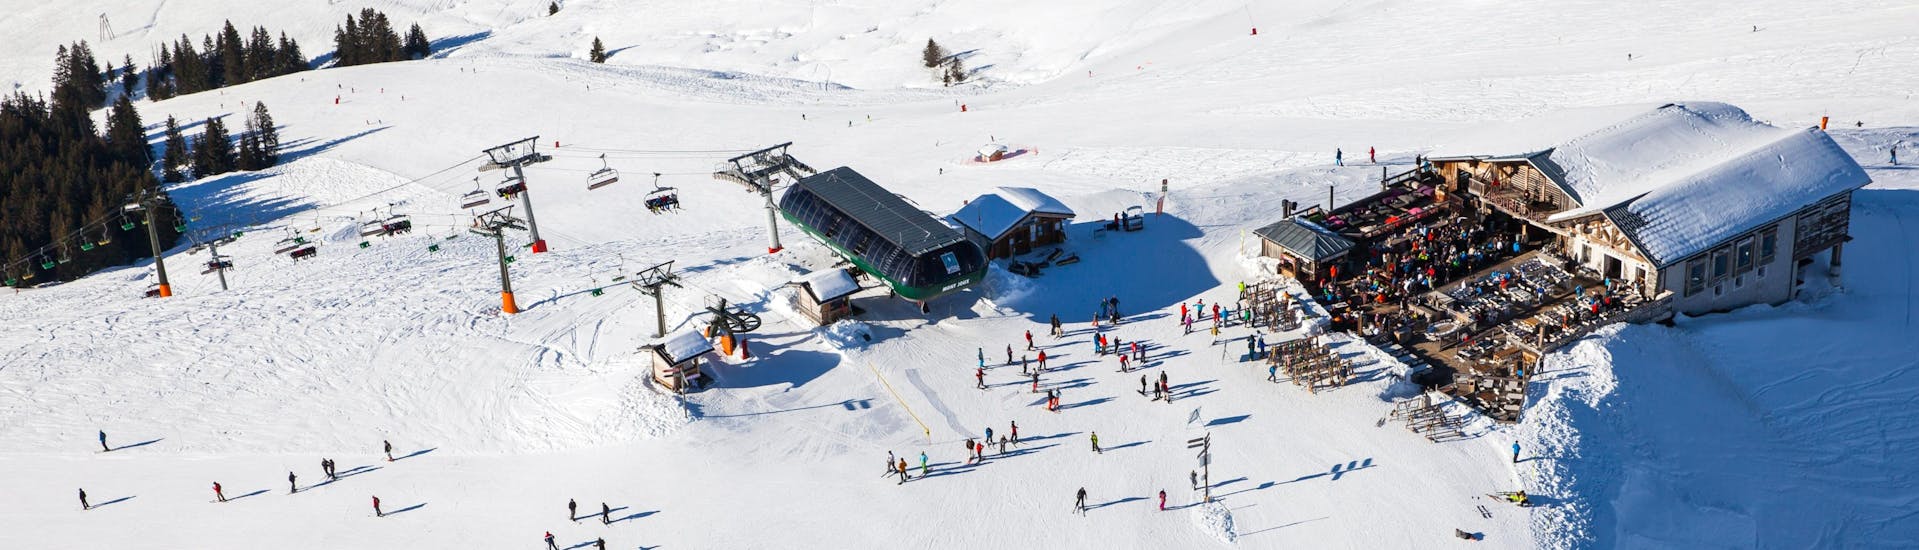 Una vista panoramica del paesaggio montano mentre le persone imparano a siare grazie alle lezioni di sci di una scuola di sci locale presso Saint Gervais.